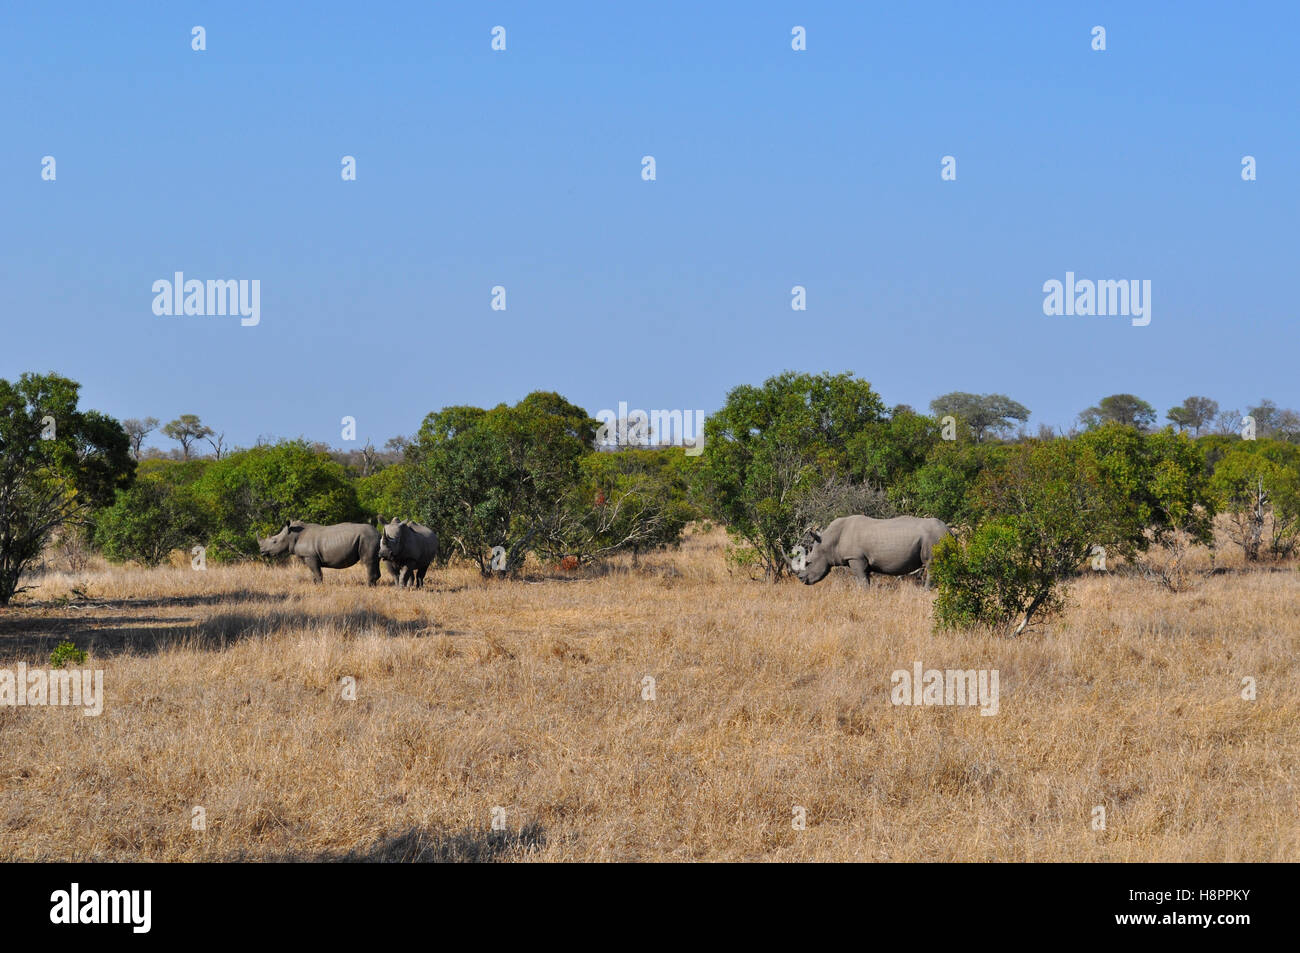 Safari en Sudáfrica, sabana verde: rinocerontes negros en una pradera en el Parque Nacional Kruger, la mayor reserva de caza en África desde 1898 Foto de stock